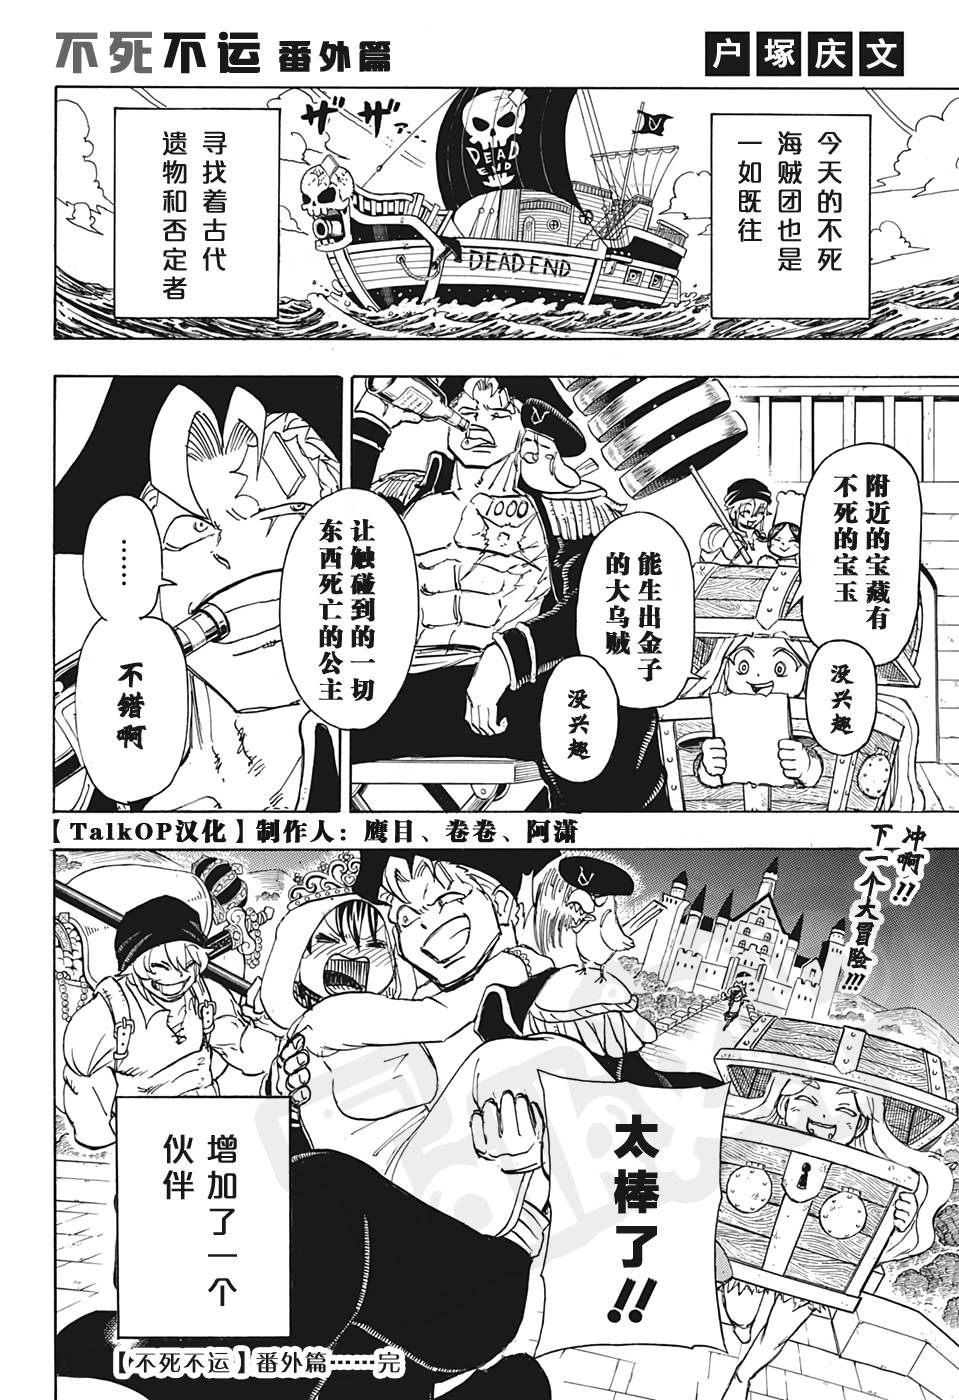 【漫画】海贼王1000话纪念番外篇:连载漫画家齐画假如xx是船长系列